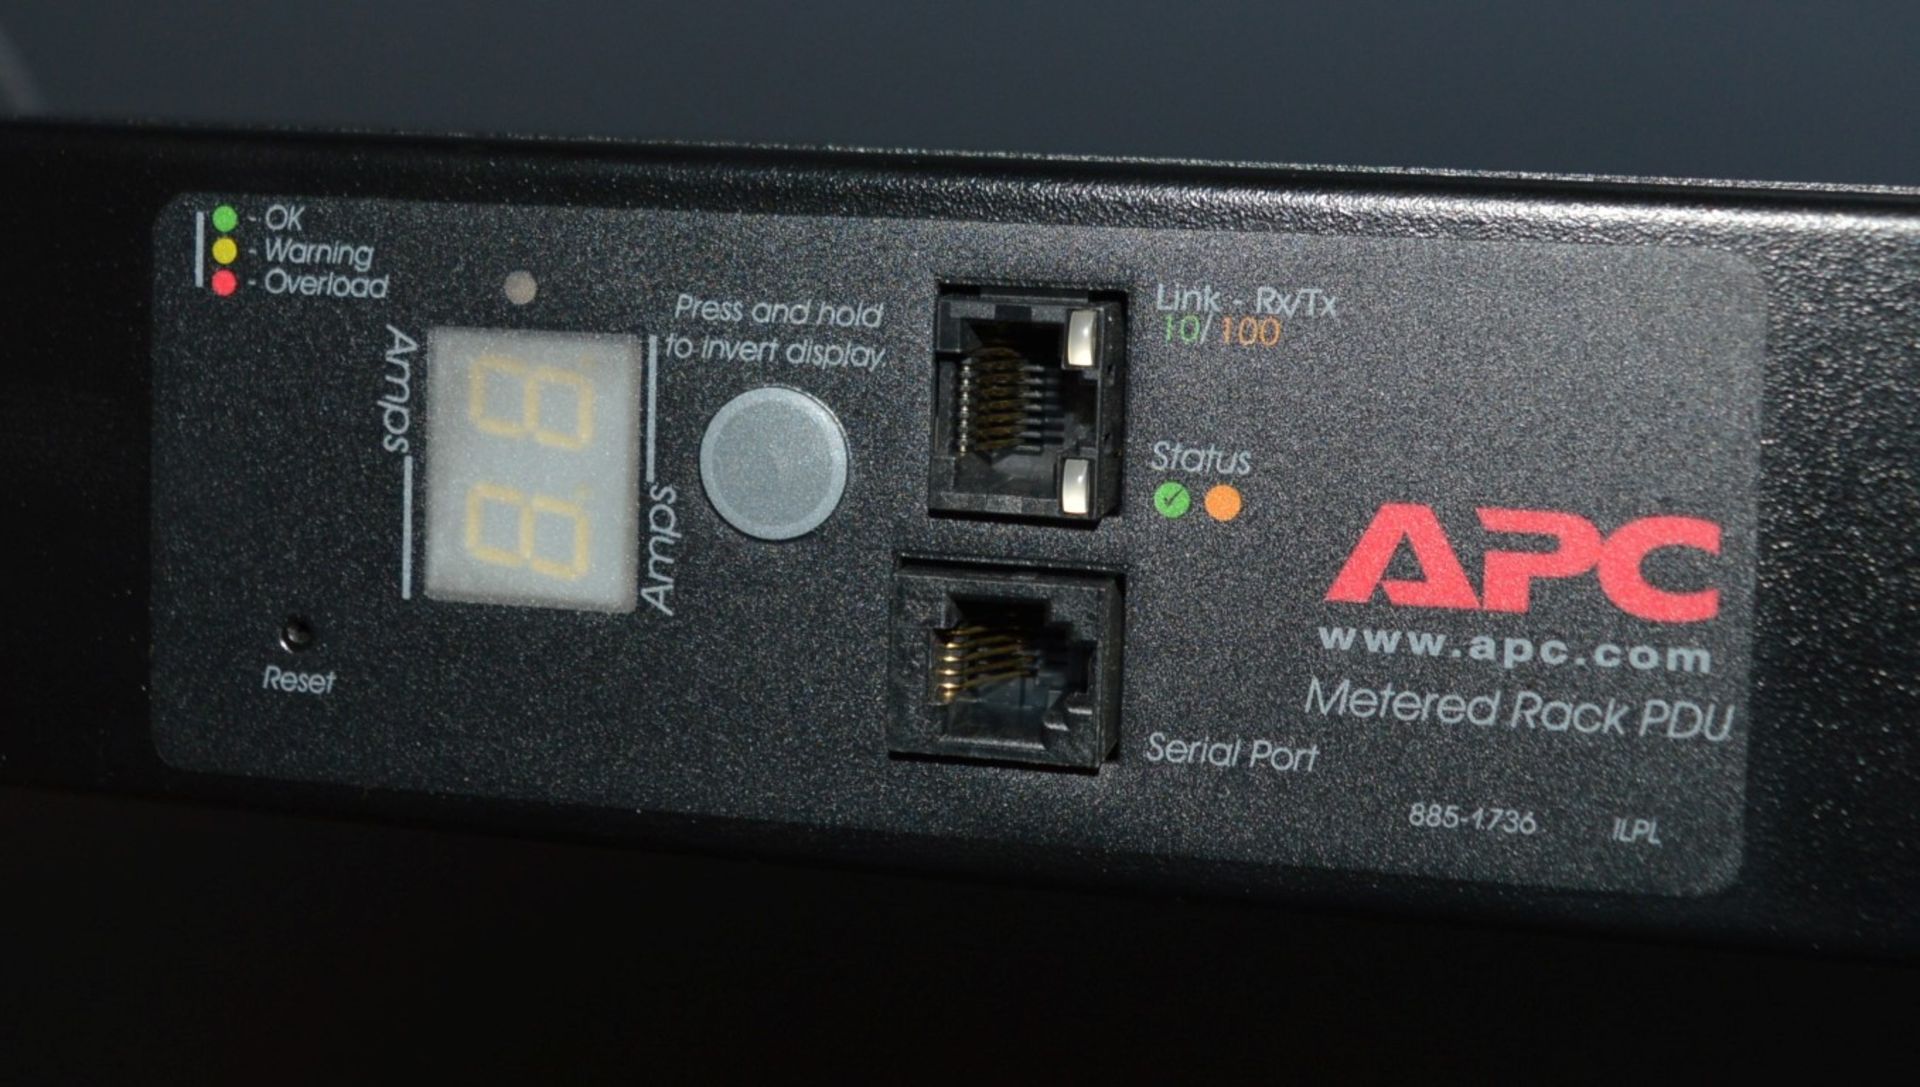 1 x APC Metered Rack PDU - Model AP7852 - 230V 16A - Features 24 Output Connectors - CL106 - Removed - Bild 2 aus 7